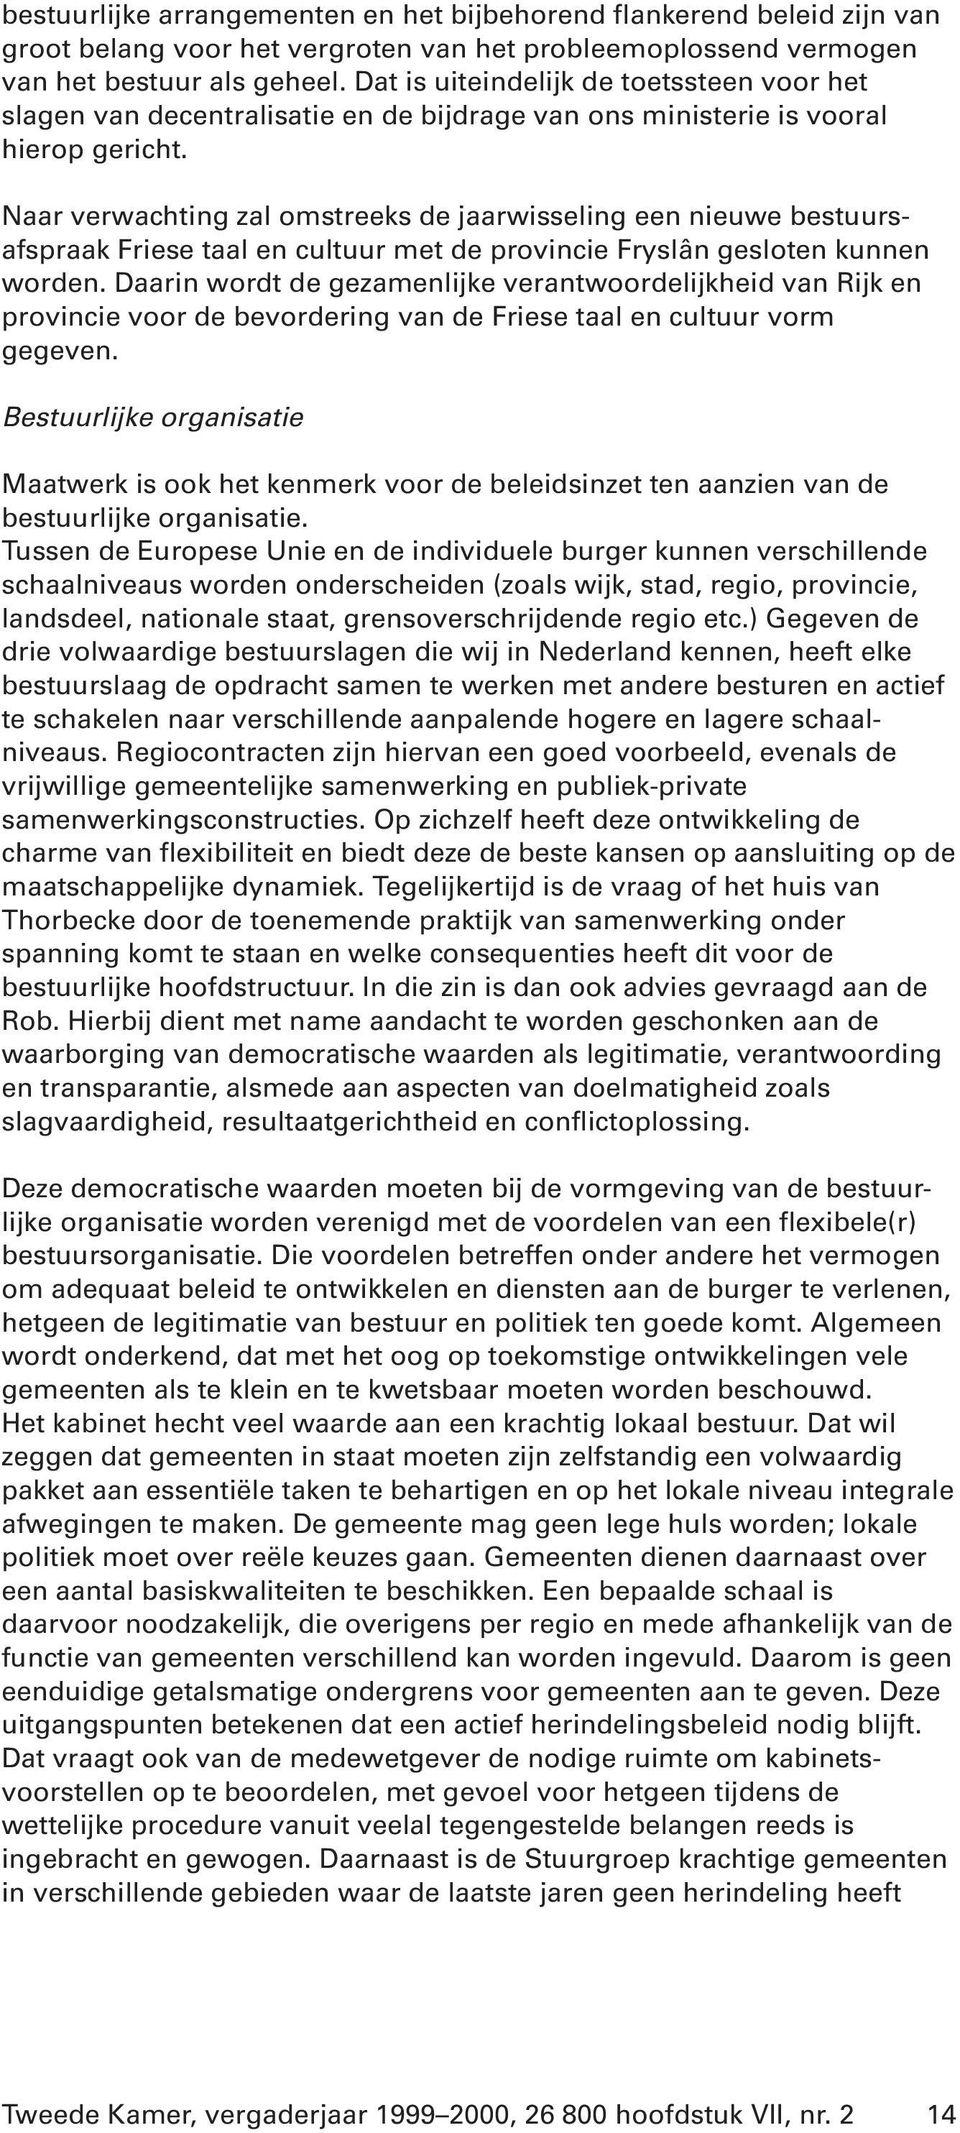 Naar verwachting zal omstreeks de jaarwisseling een nieuwe bestuursafspraak Friese taal en cultuur met de provincie Fryslân gesloten kunnen worden.